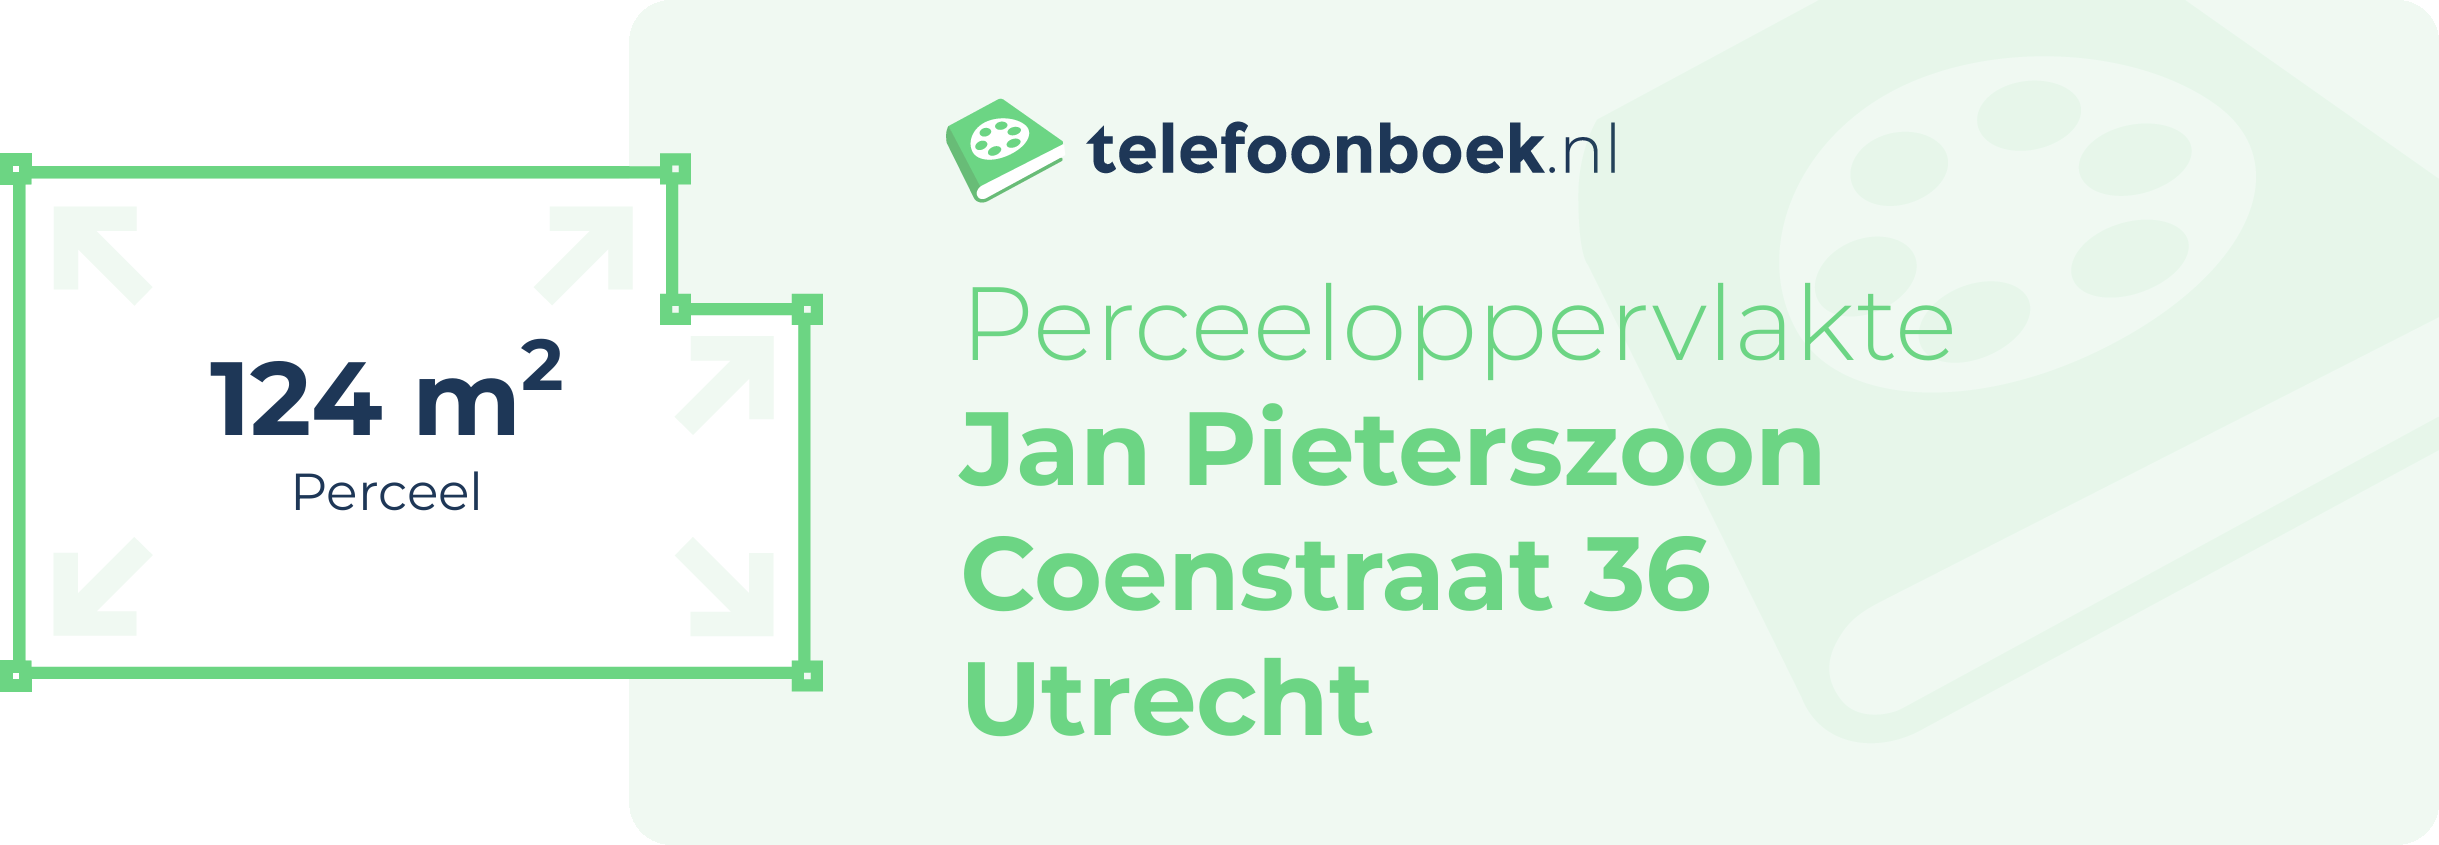 Perceeloppervlakte Jan Pieterszoon Coenstraat 36 Utrecht